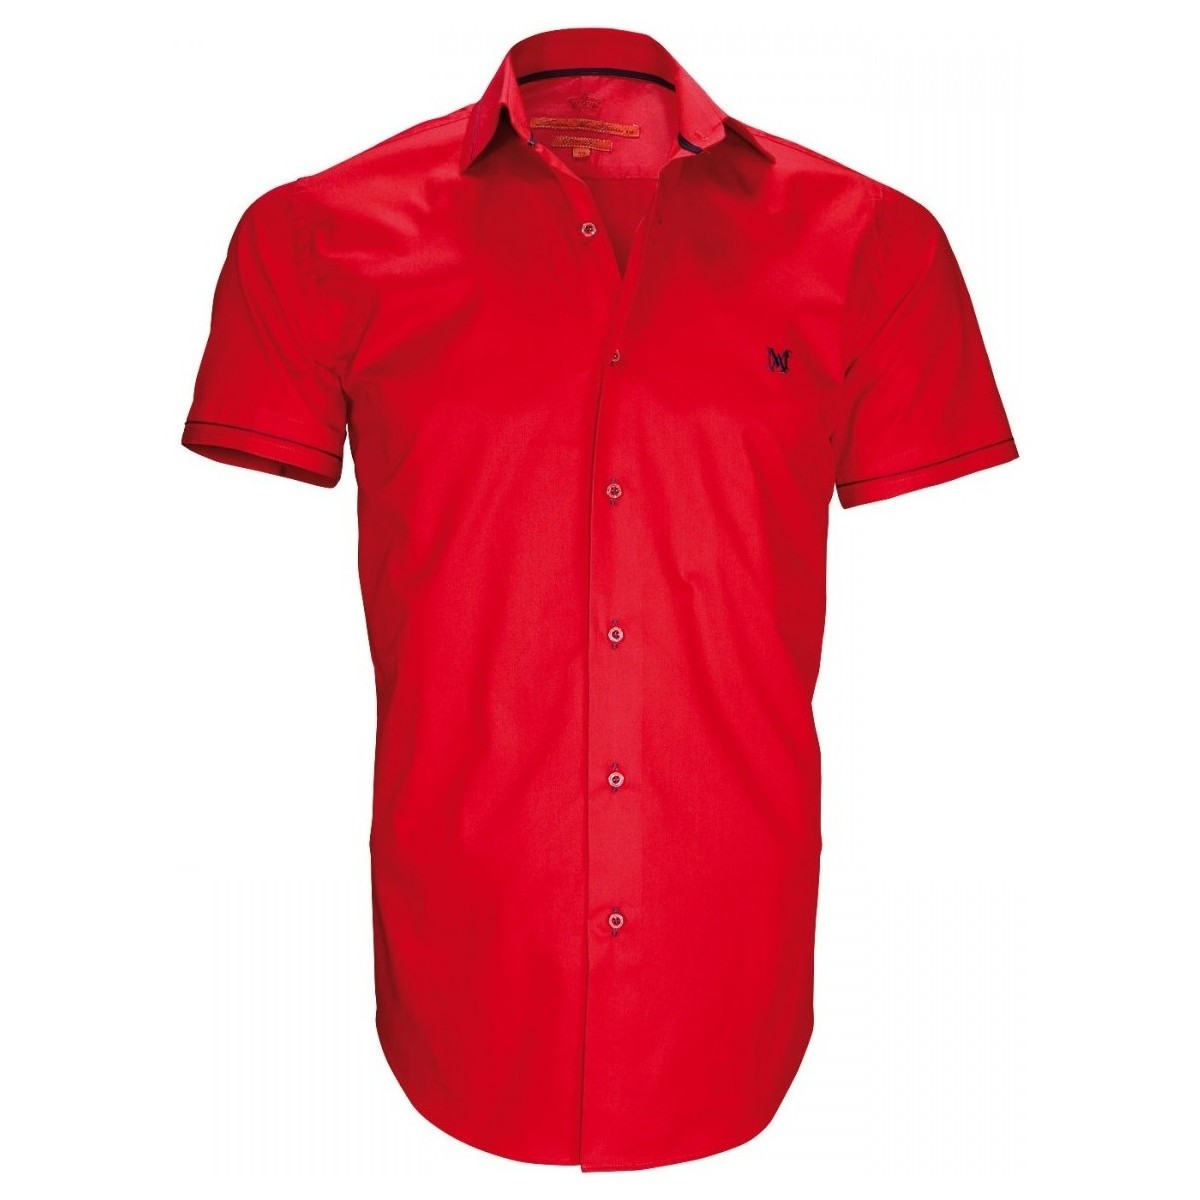 Vêtements Homme Polo Ralph Laure chemisette mode new pacifique rouge Rouge